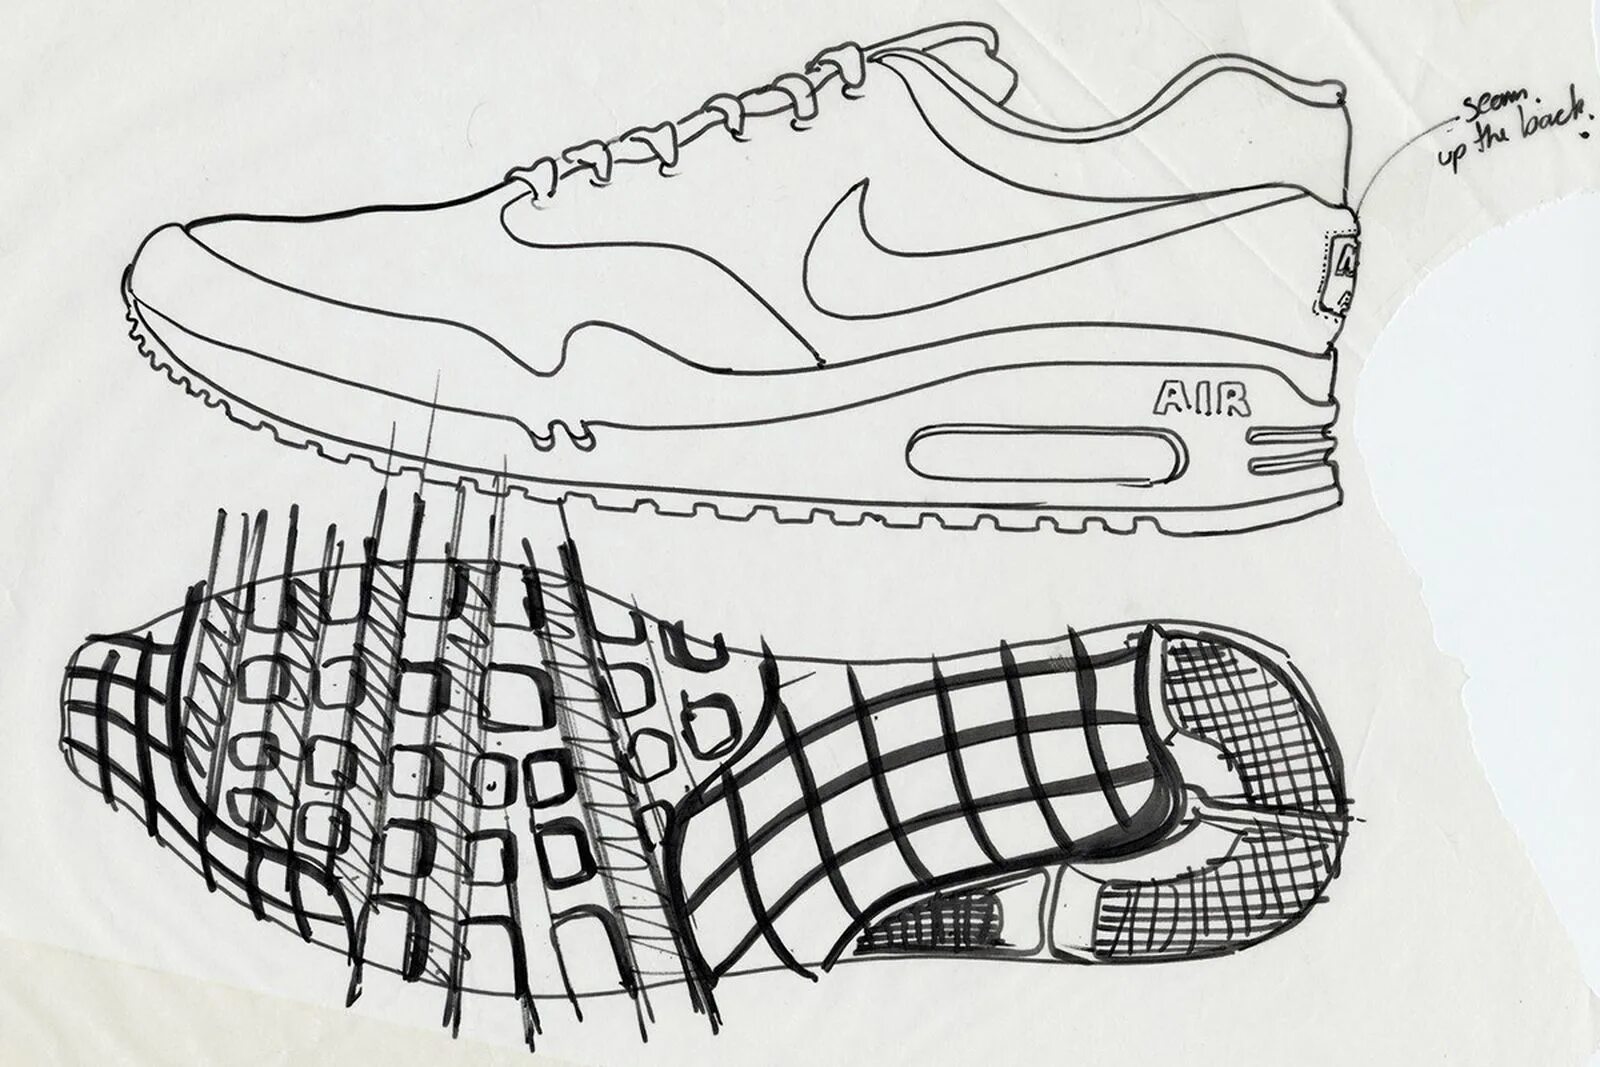 Подошва карандаша. Nike Air Max 95 Sketch. Nike Air Max 1 Sketch to Shelf. Air Max 95 подошва. Подошва найк АИР Макс.